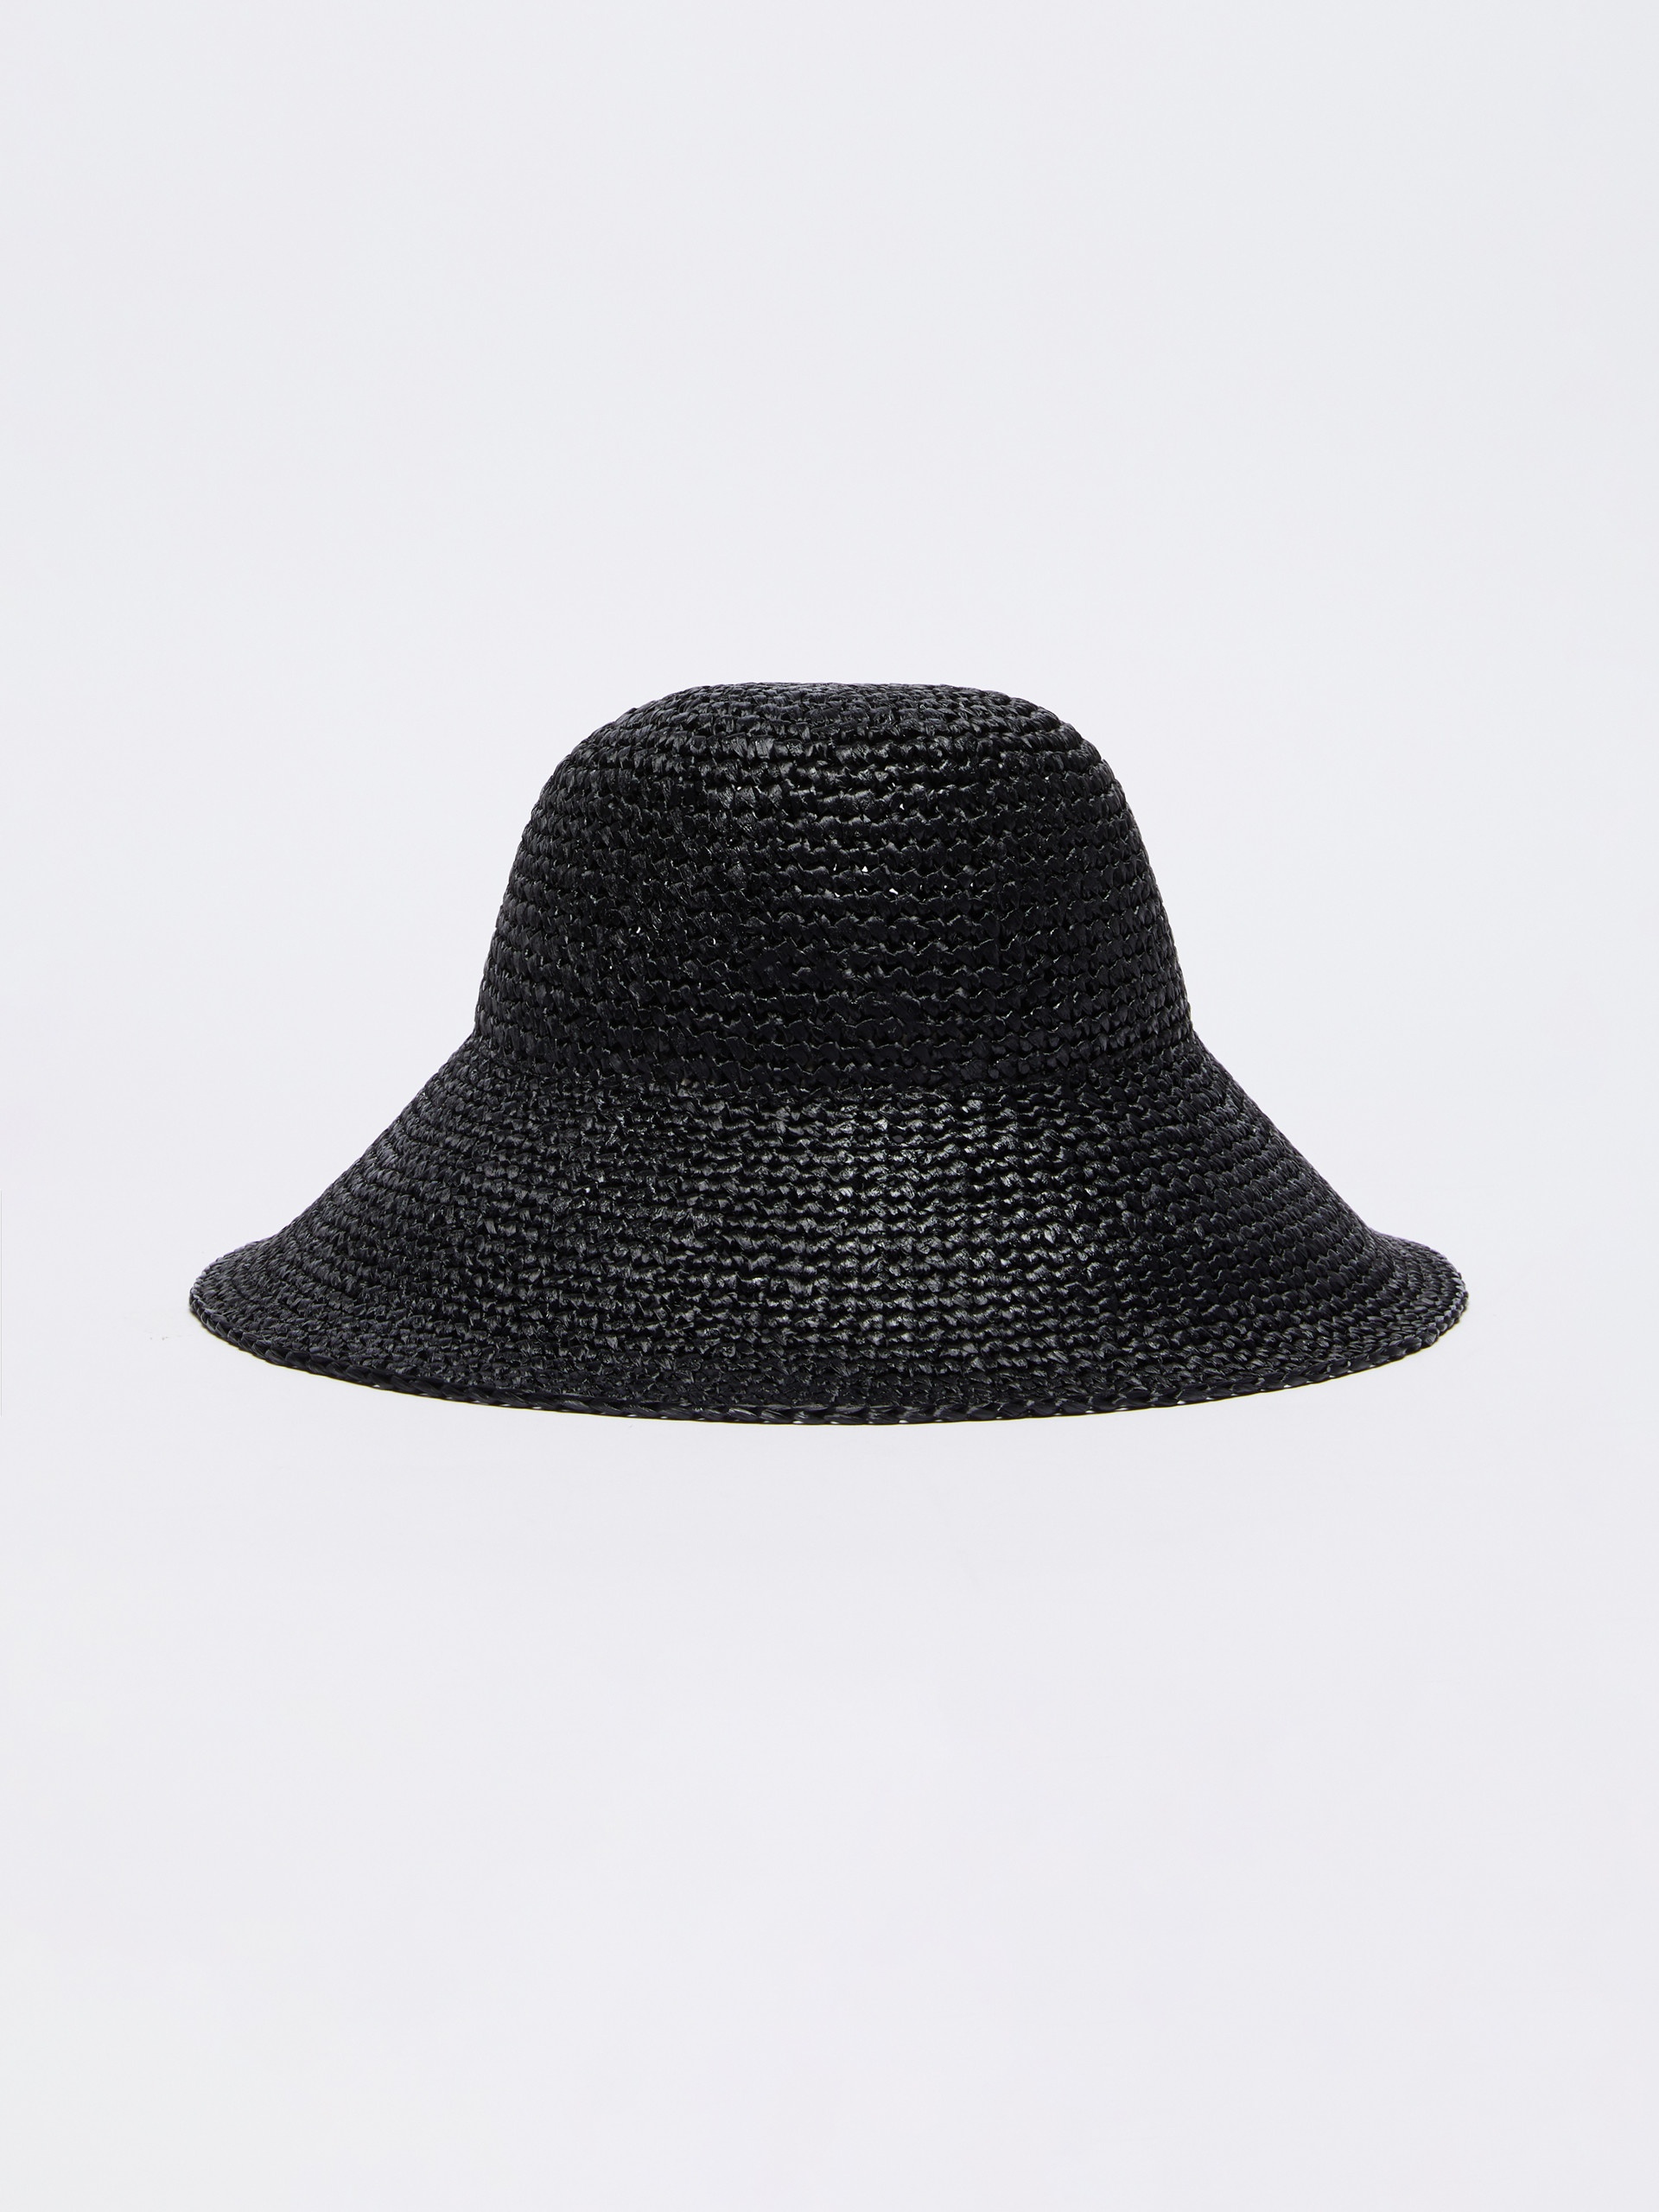 CARL Straw hat - 1